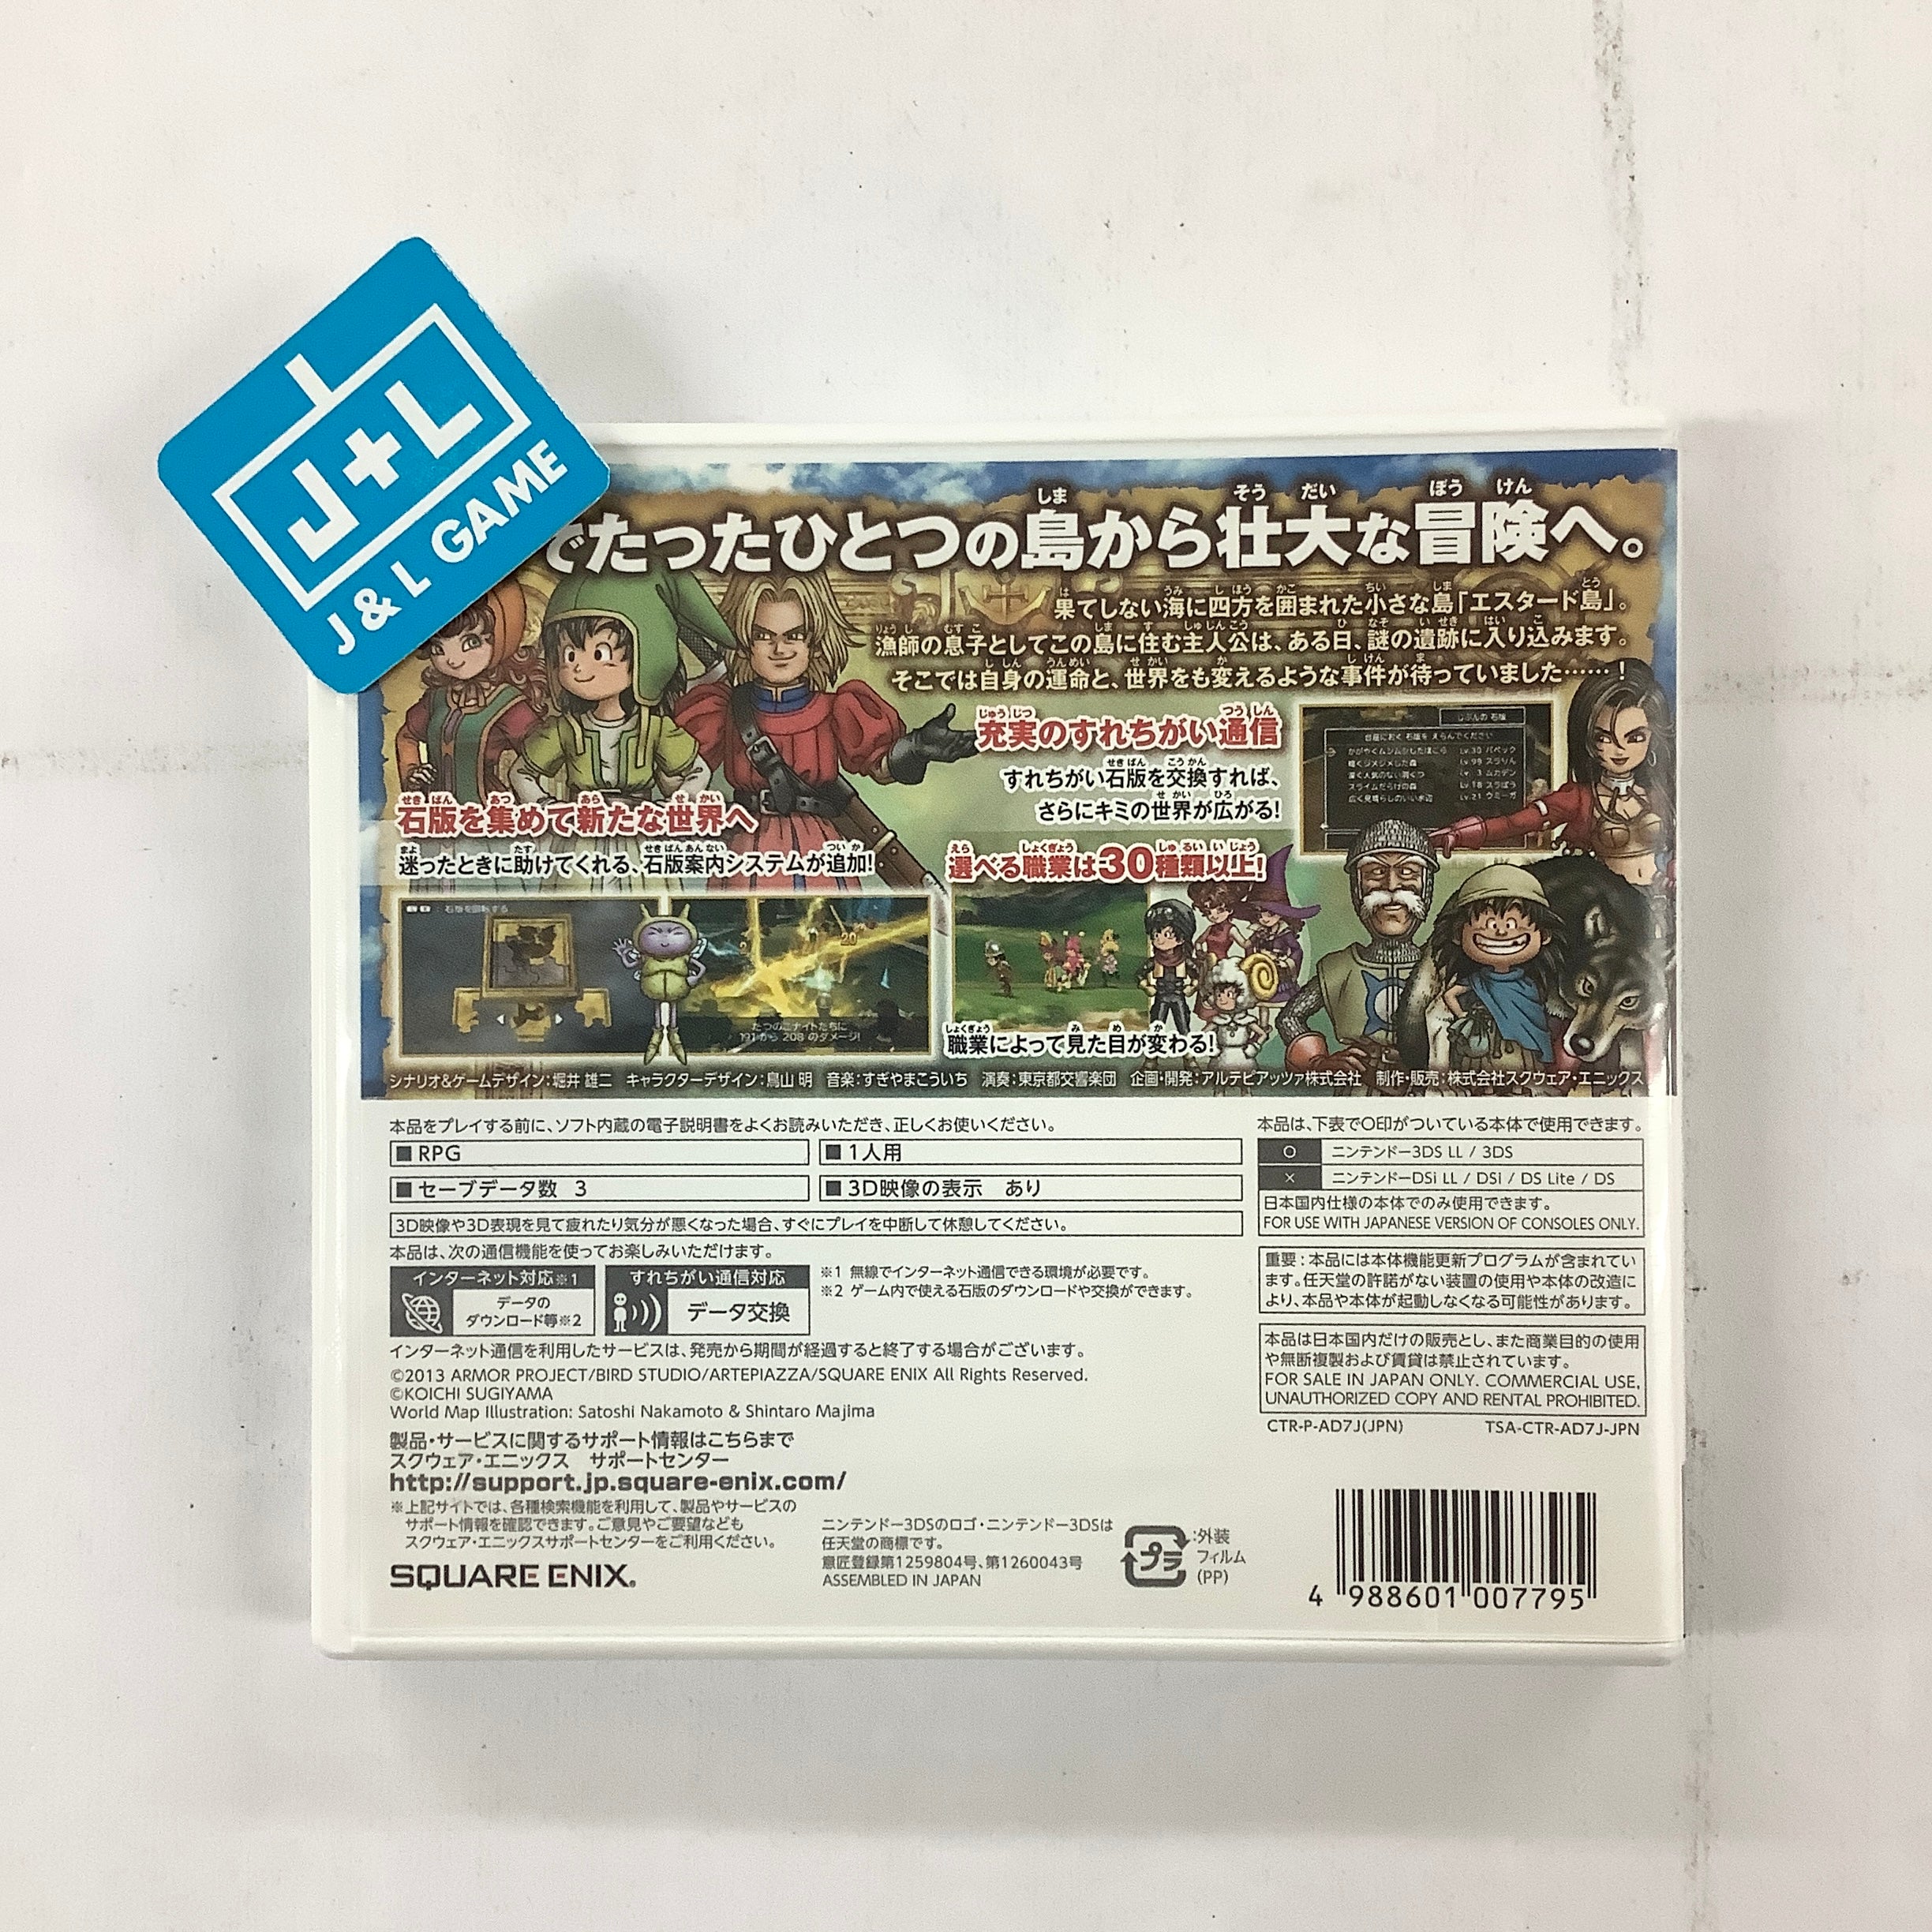 Dragon Quest VII: Eden no Senshitachi - Nintendo 3DS [Pre-Owned] (Japanese Import) Video Games Square Enix   